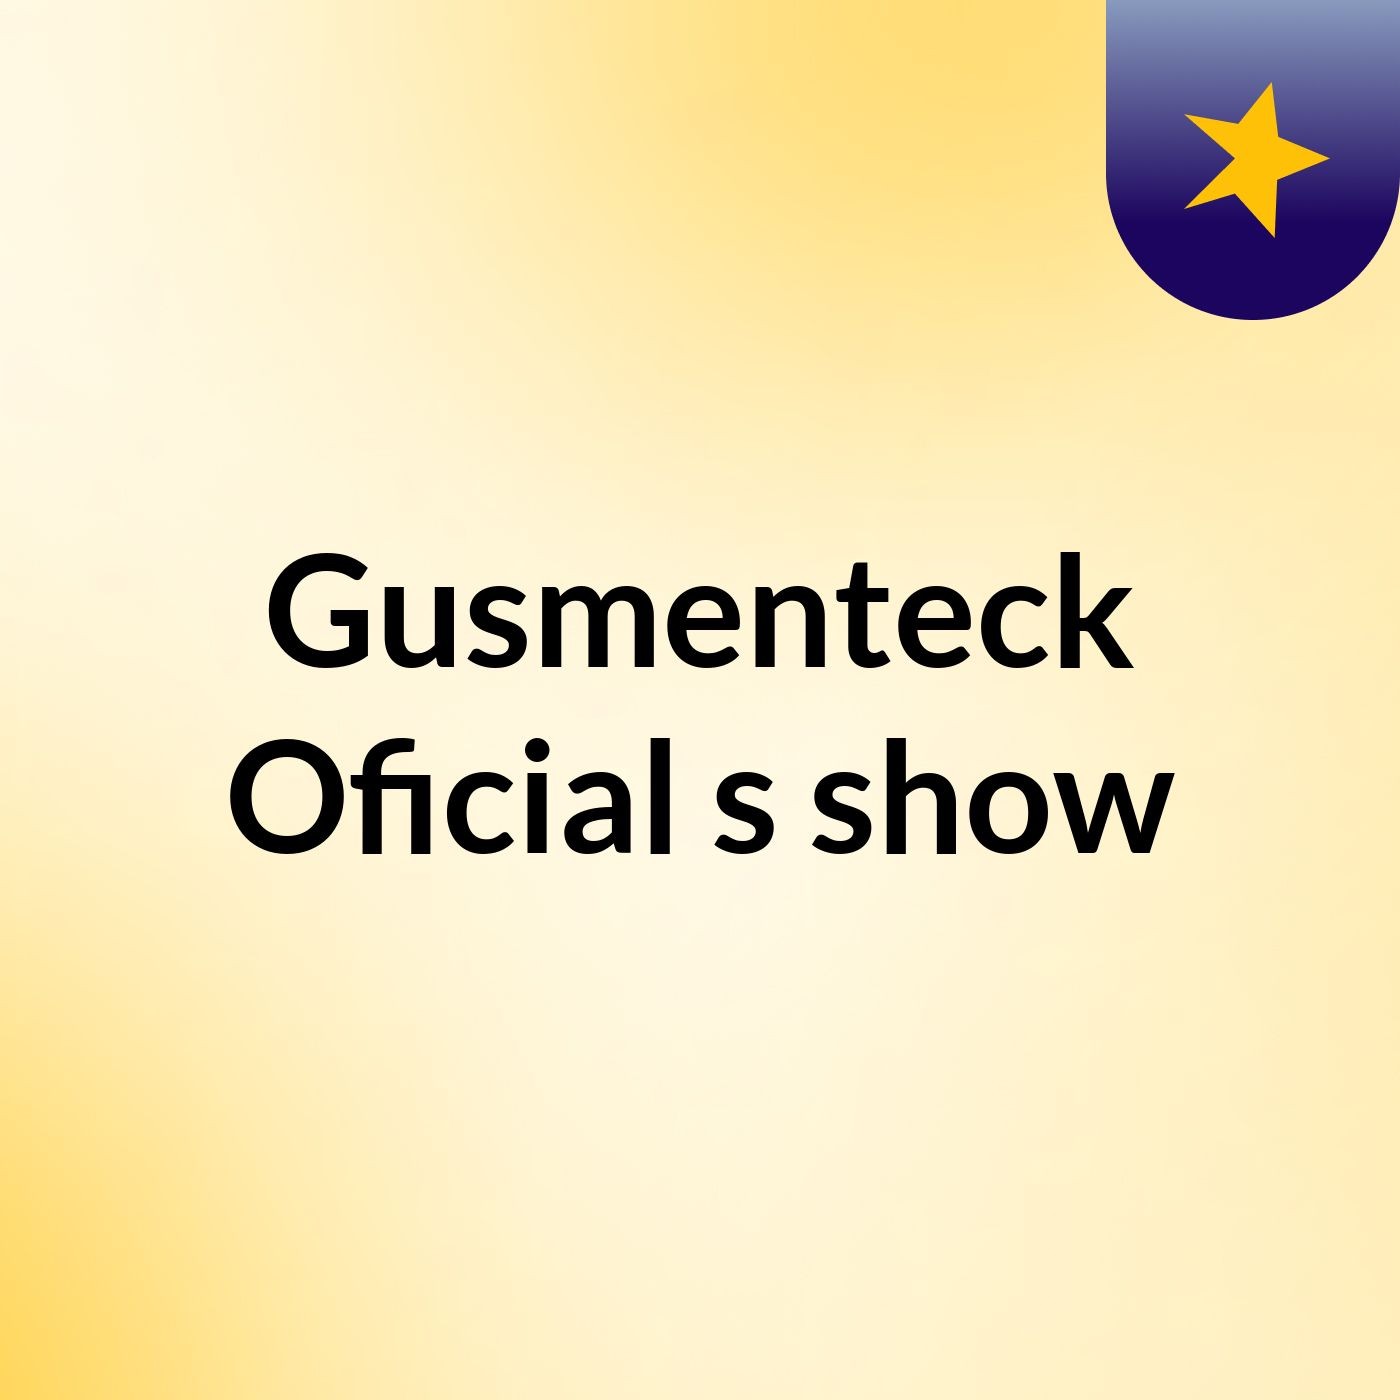 Gusmenteck Oficial's show